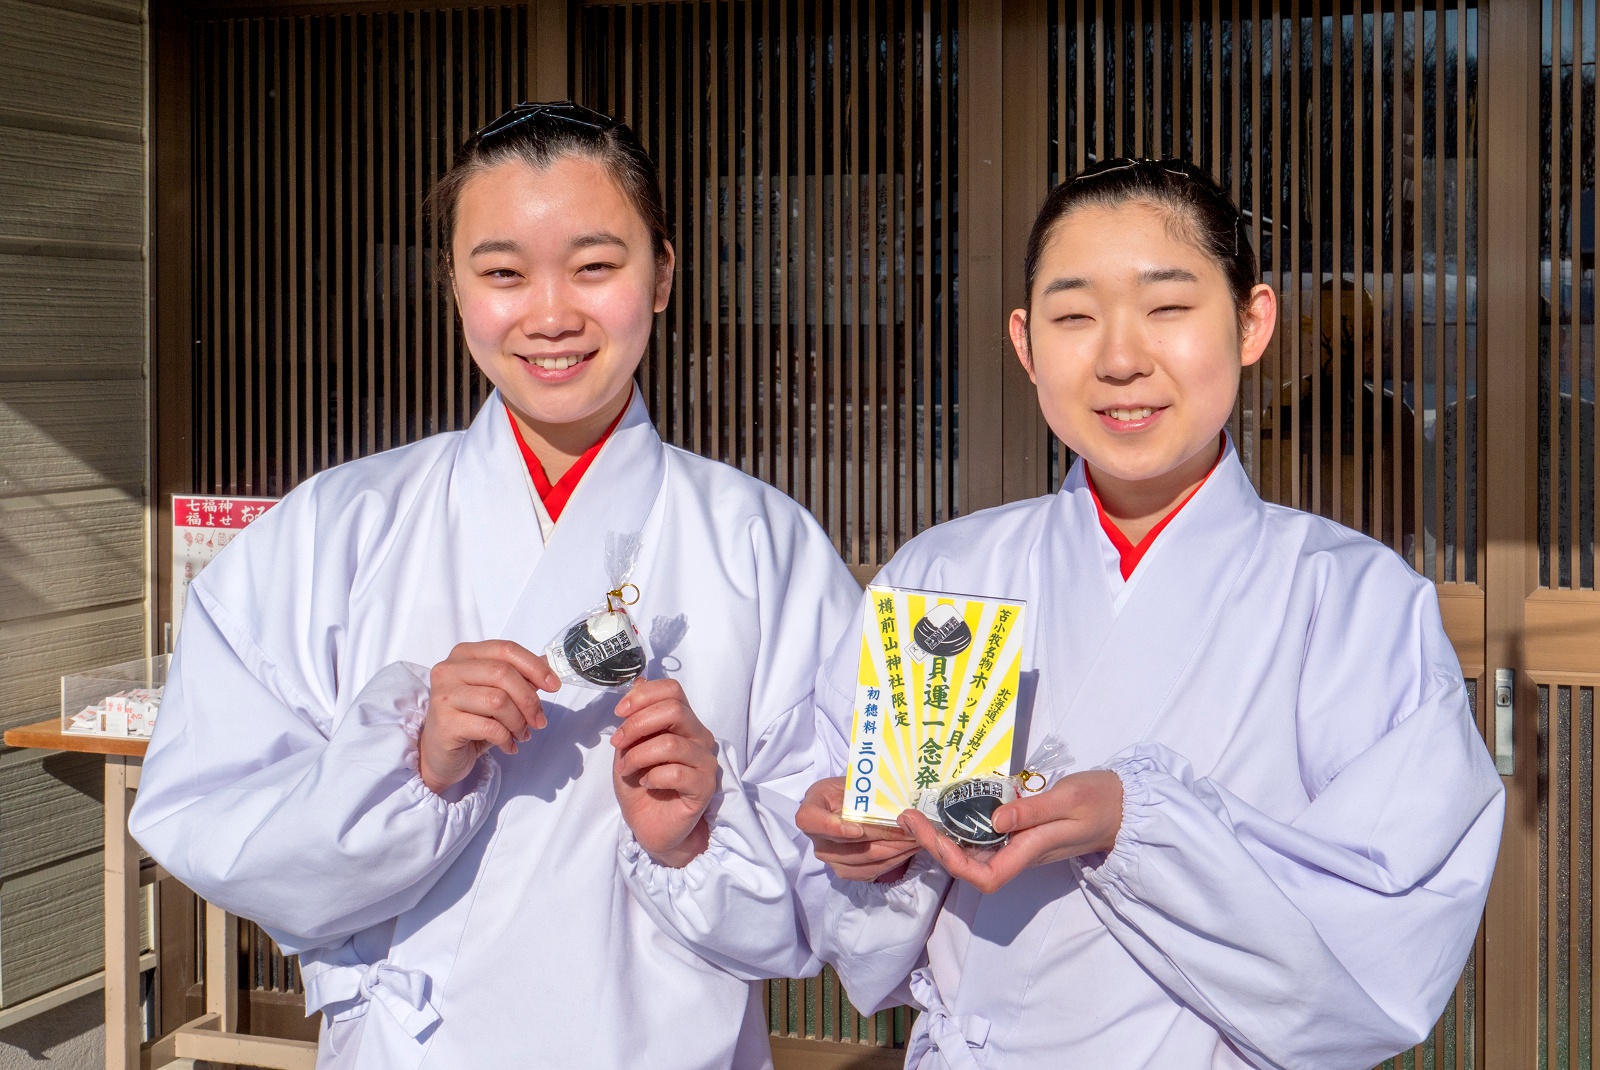 苫小牧市 樽前山神社のおみくじは、水揚げ日本一を誇るアレがモチーフに！